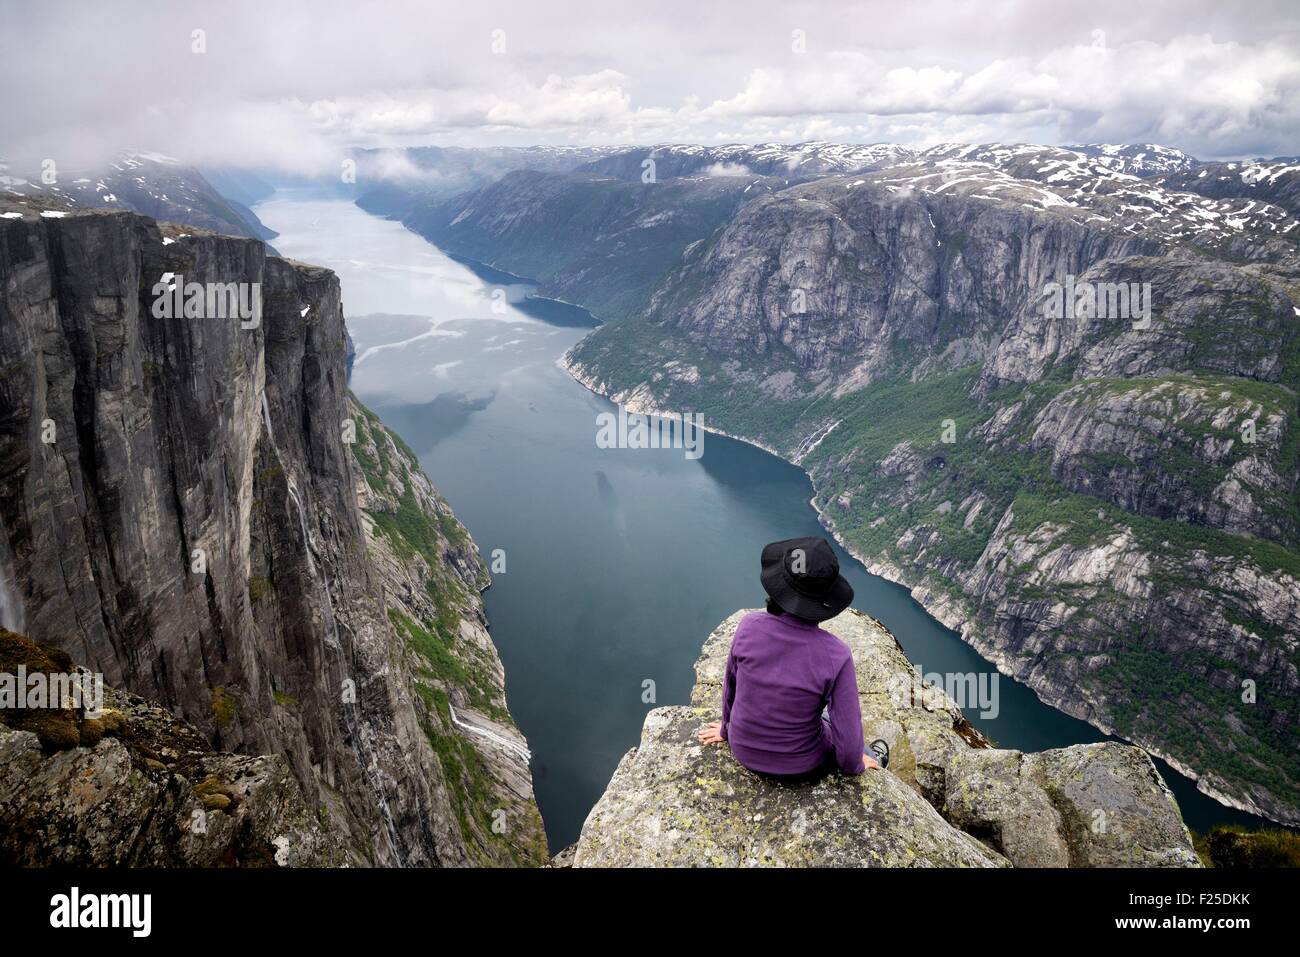 Norvegia, Rogaland, Lysefjord, Kjerag (Kiragg), escursionista guardare il fiordo 1000m sotto (sig. Dawa OK) Foto Stock